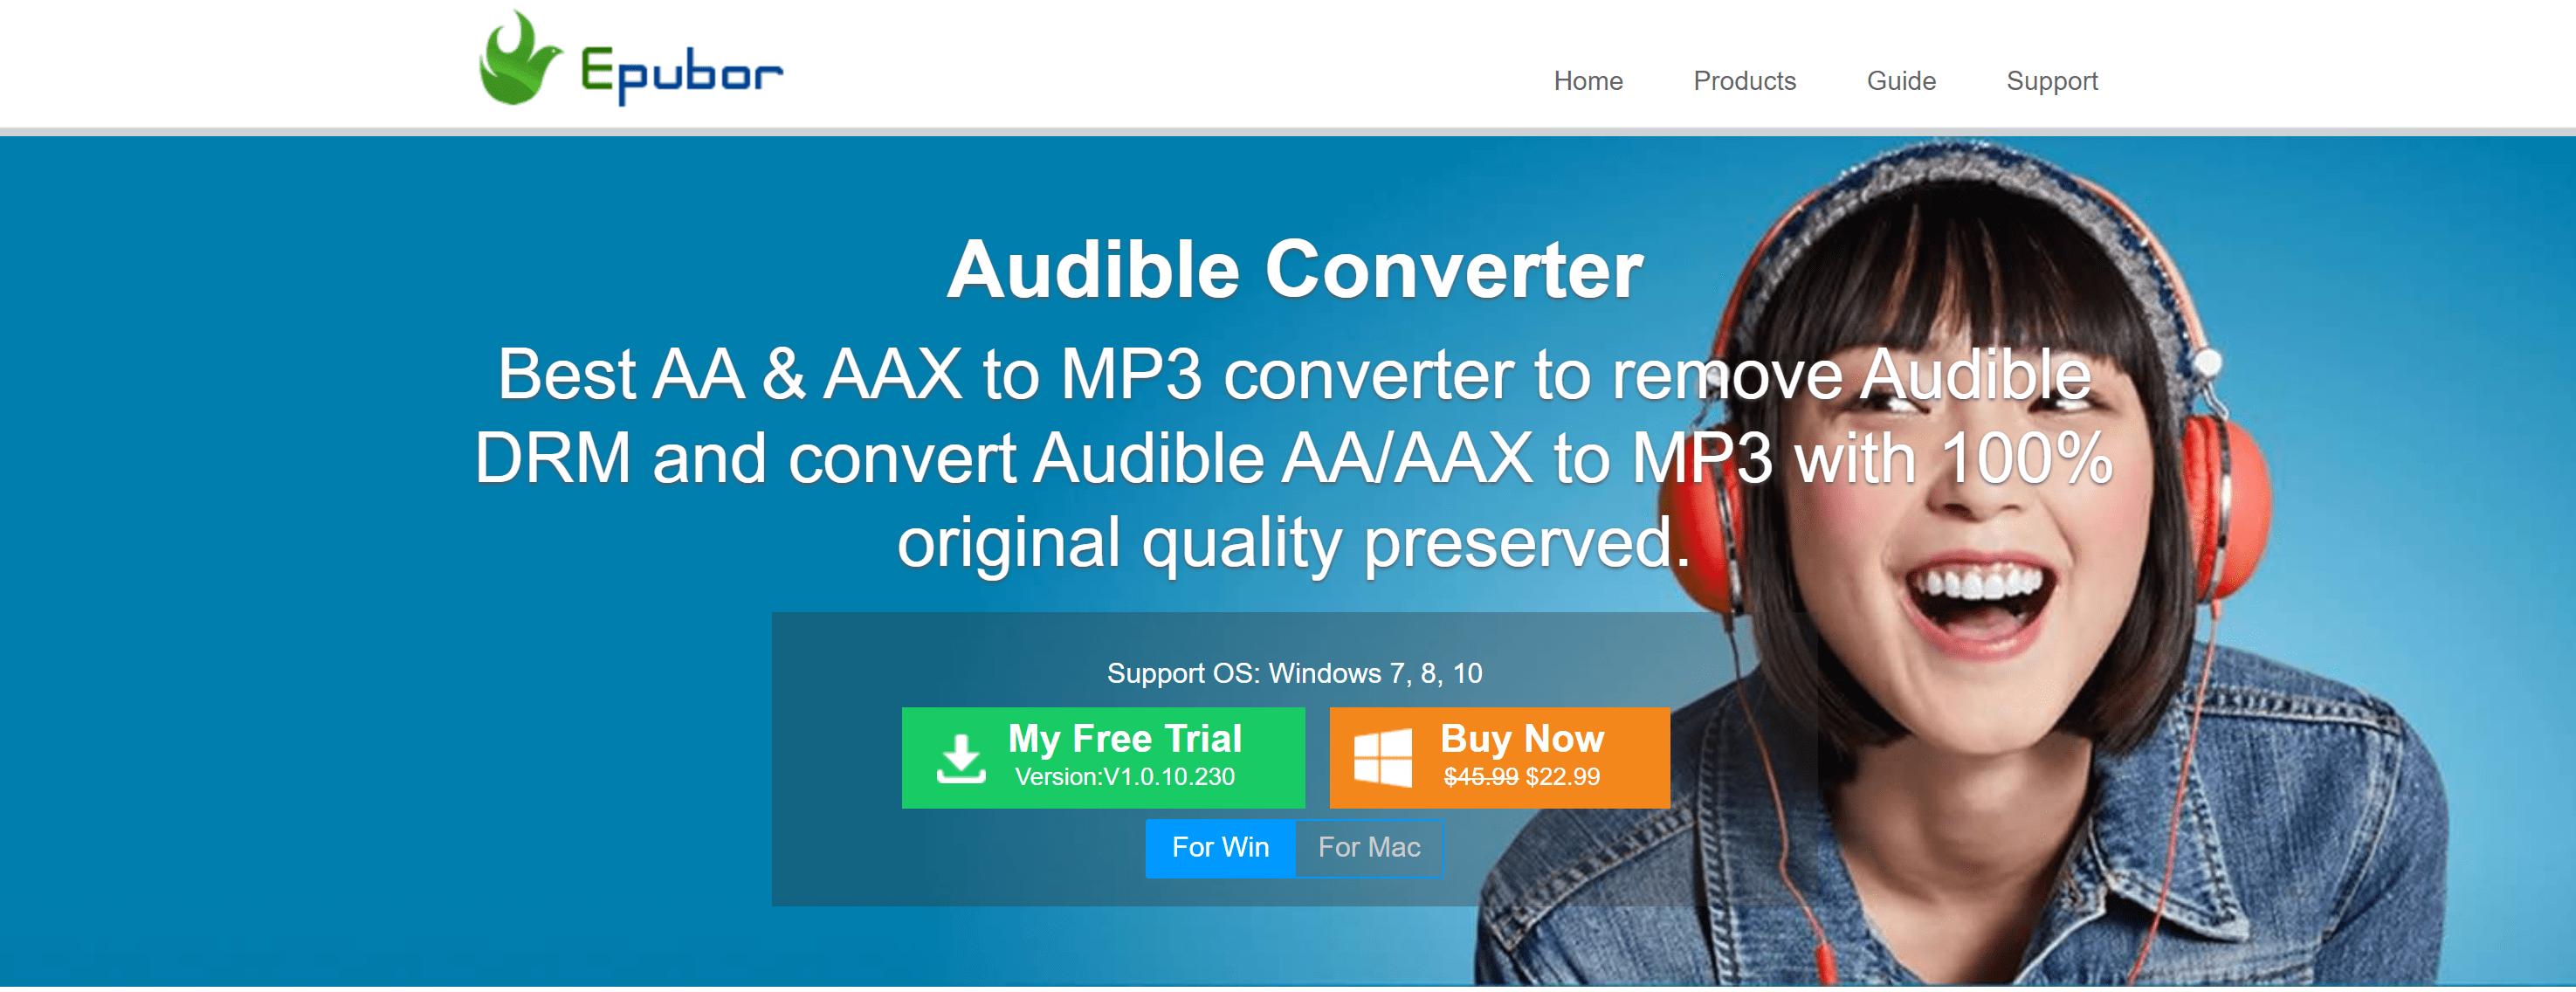 epubor audible converter for mac coipon